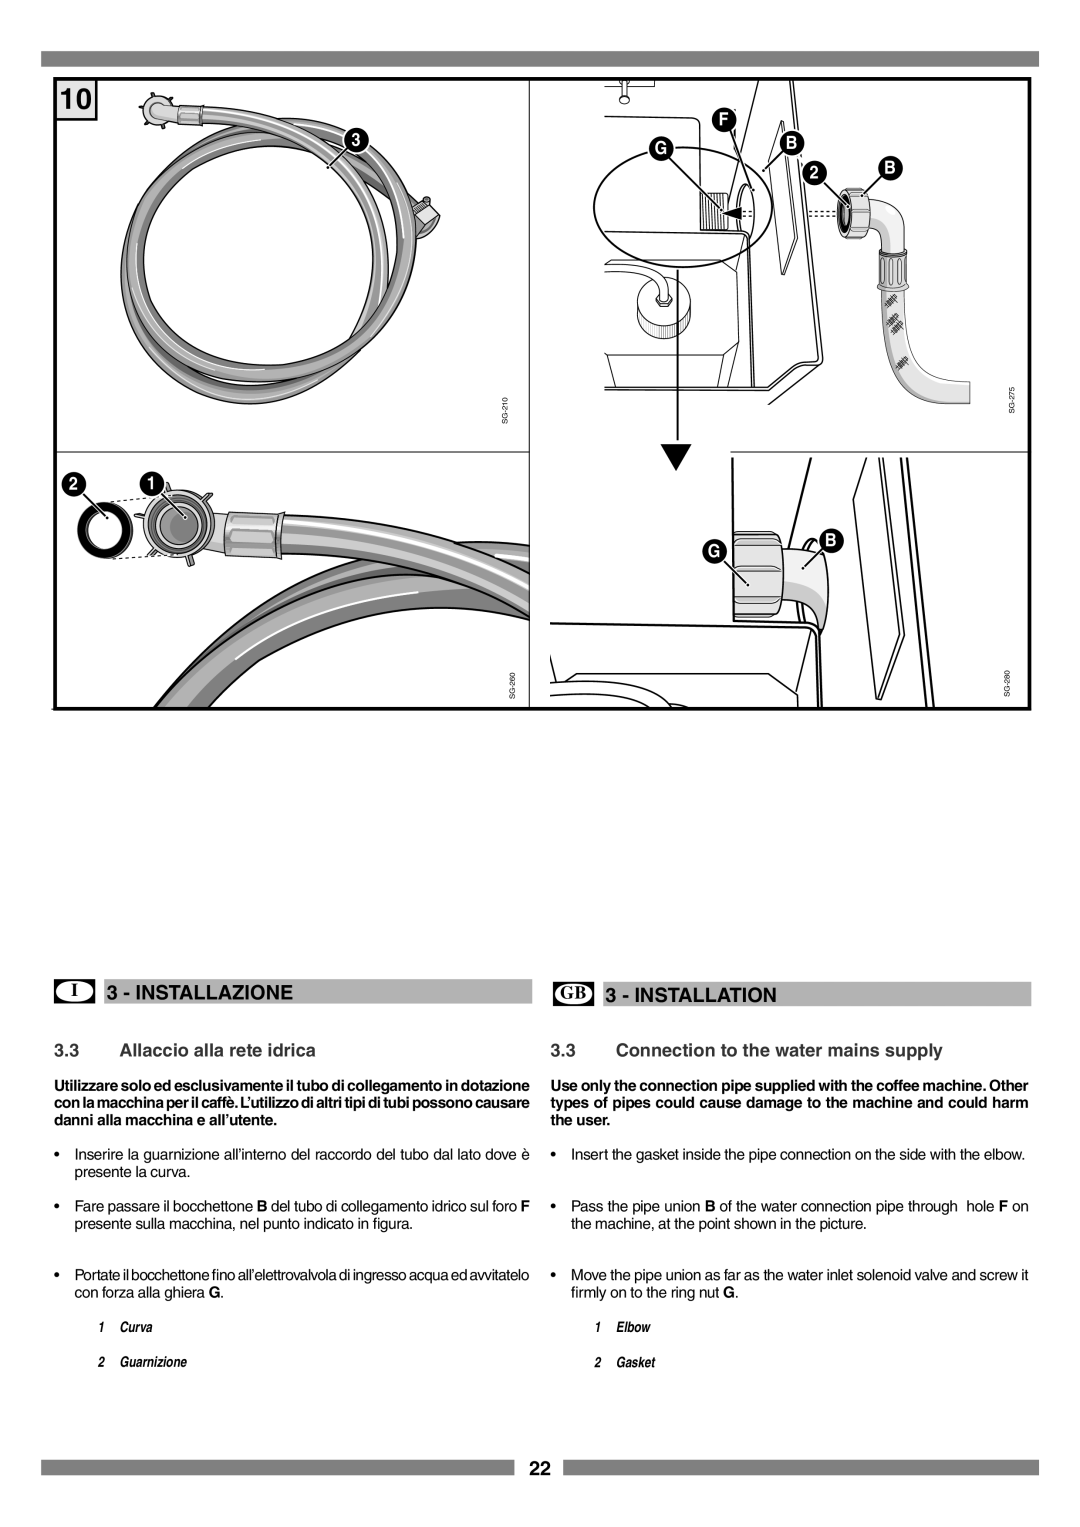 Smeg SCM1 manual Allaccio alla rete idrica, Connection to the water mains supply, I 3 - INSTALLAZIONE, GB 3 - INSTALLATION 